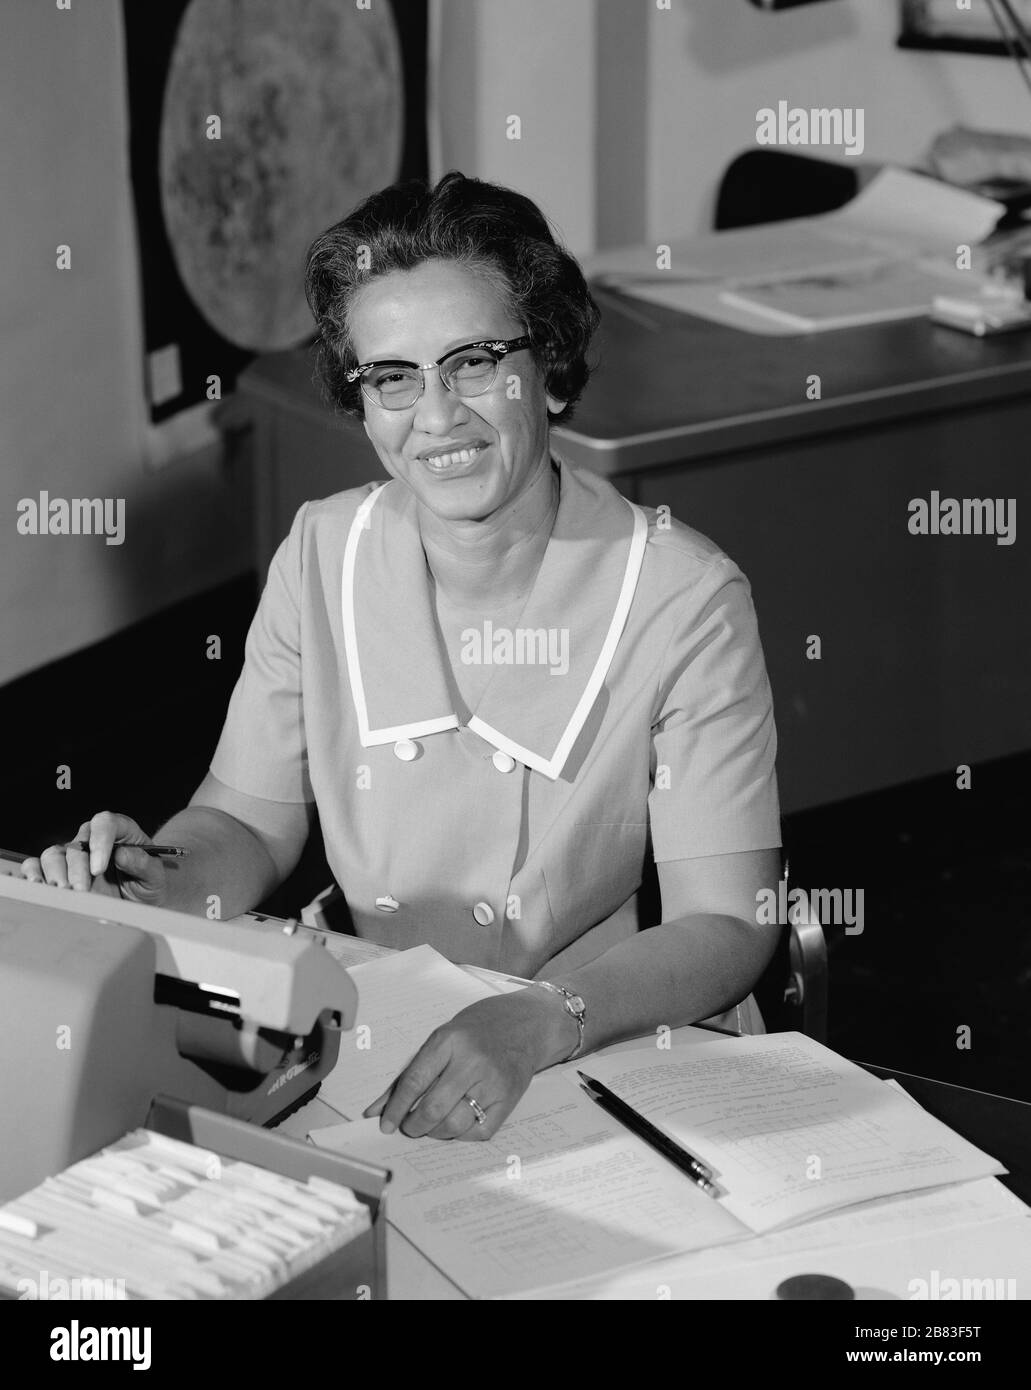 Ritratto del computer umano della NASA e pioniere matematico afro-americano Katherine Johnson (1918-2020) sorridente, ad una scrivania con note, 1966. Immagine gentilmente concessa dalla NASA. () Foto Stock